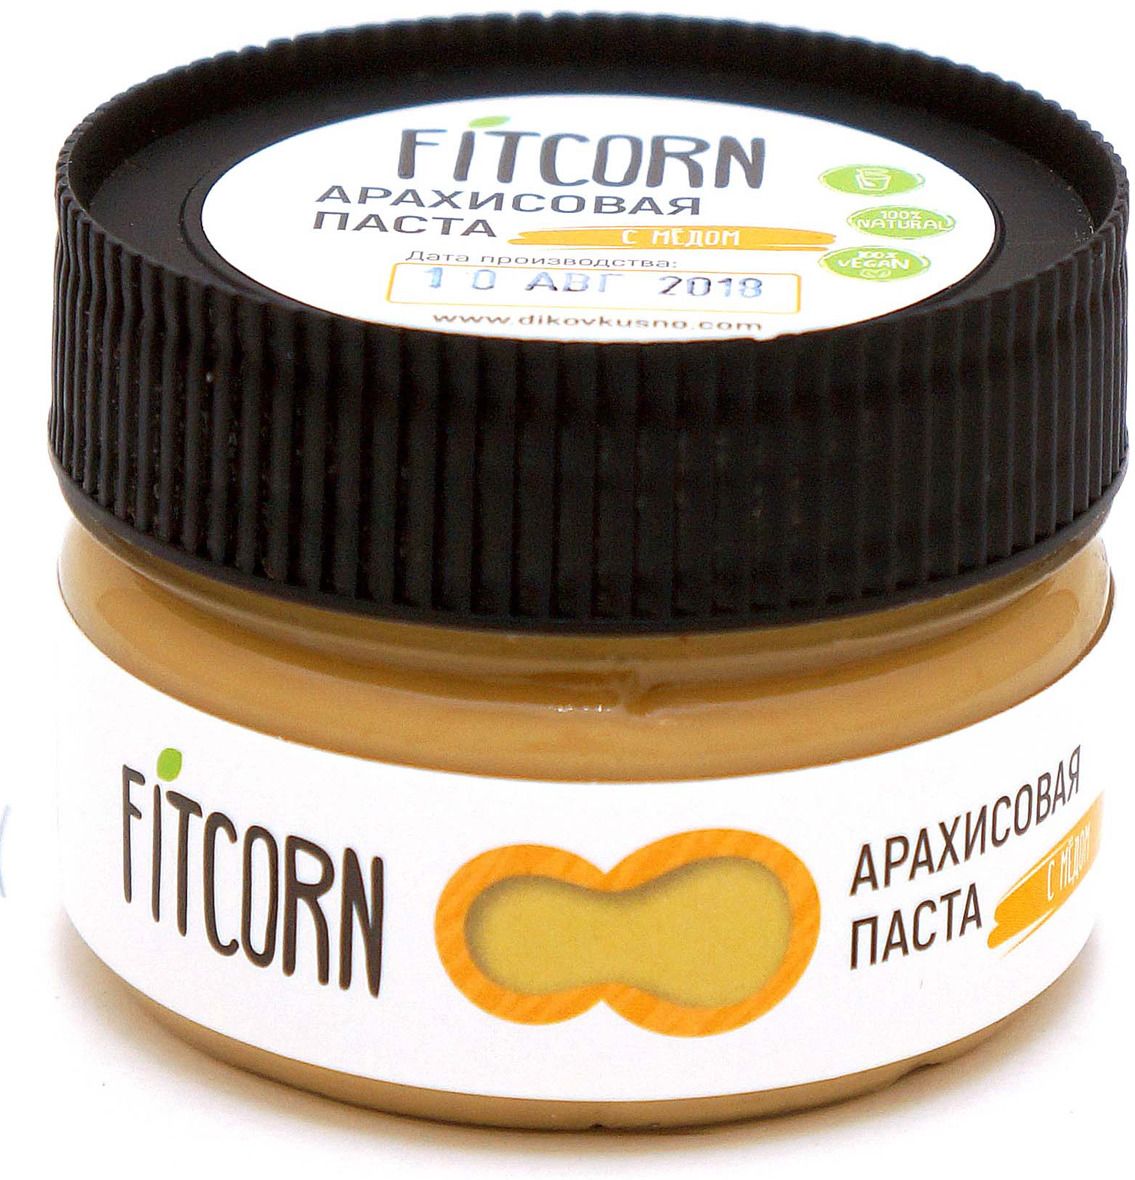   Fitcorn  , 80 